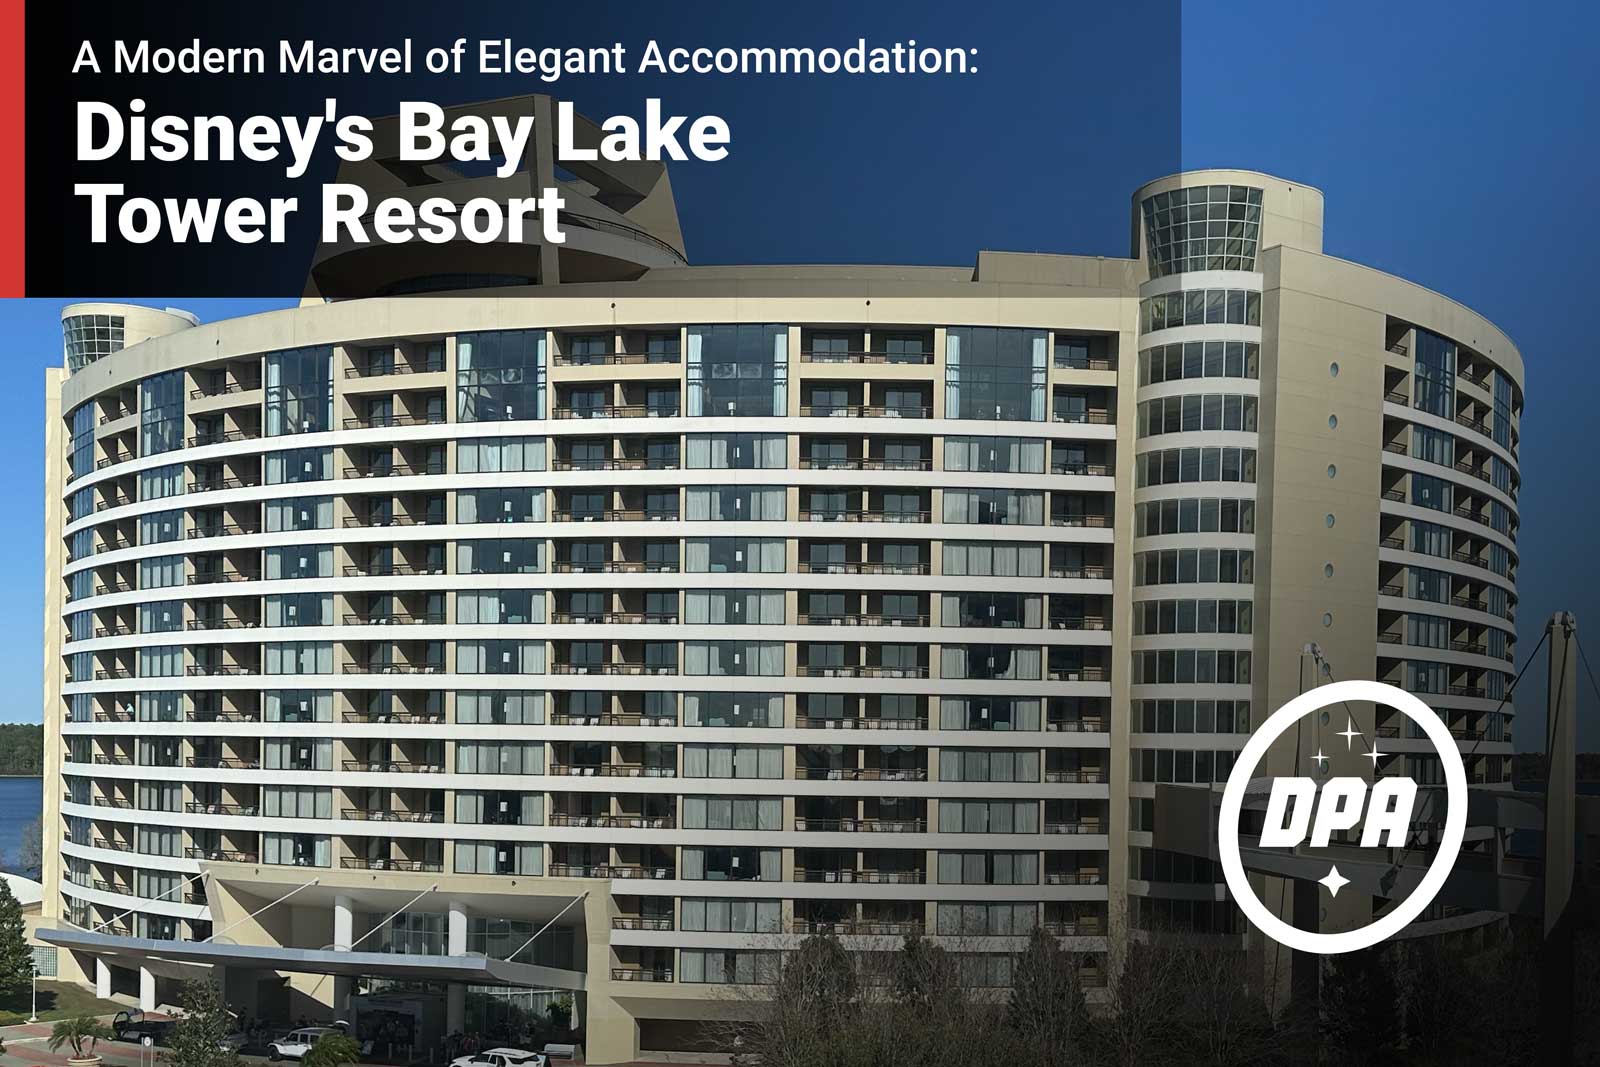 Disney's Bay Lake Tower: A Modern Marvel of Elegant Accommodation